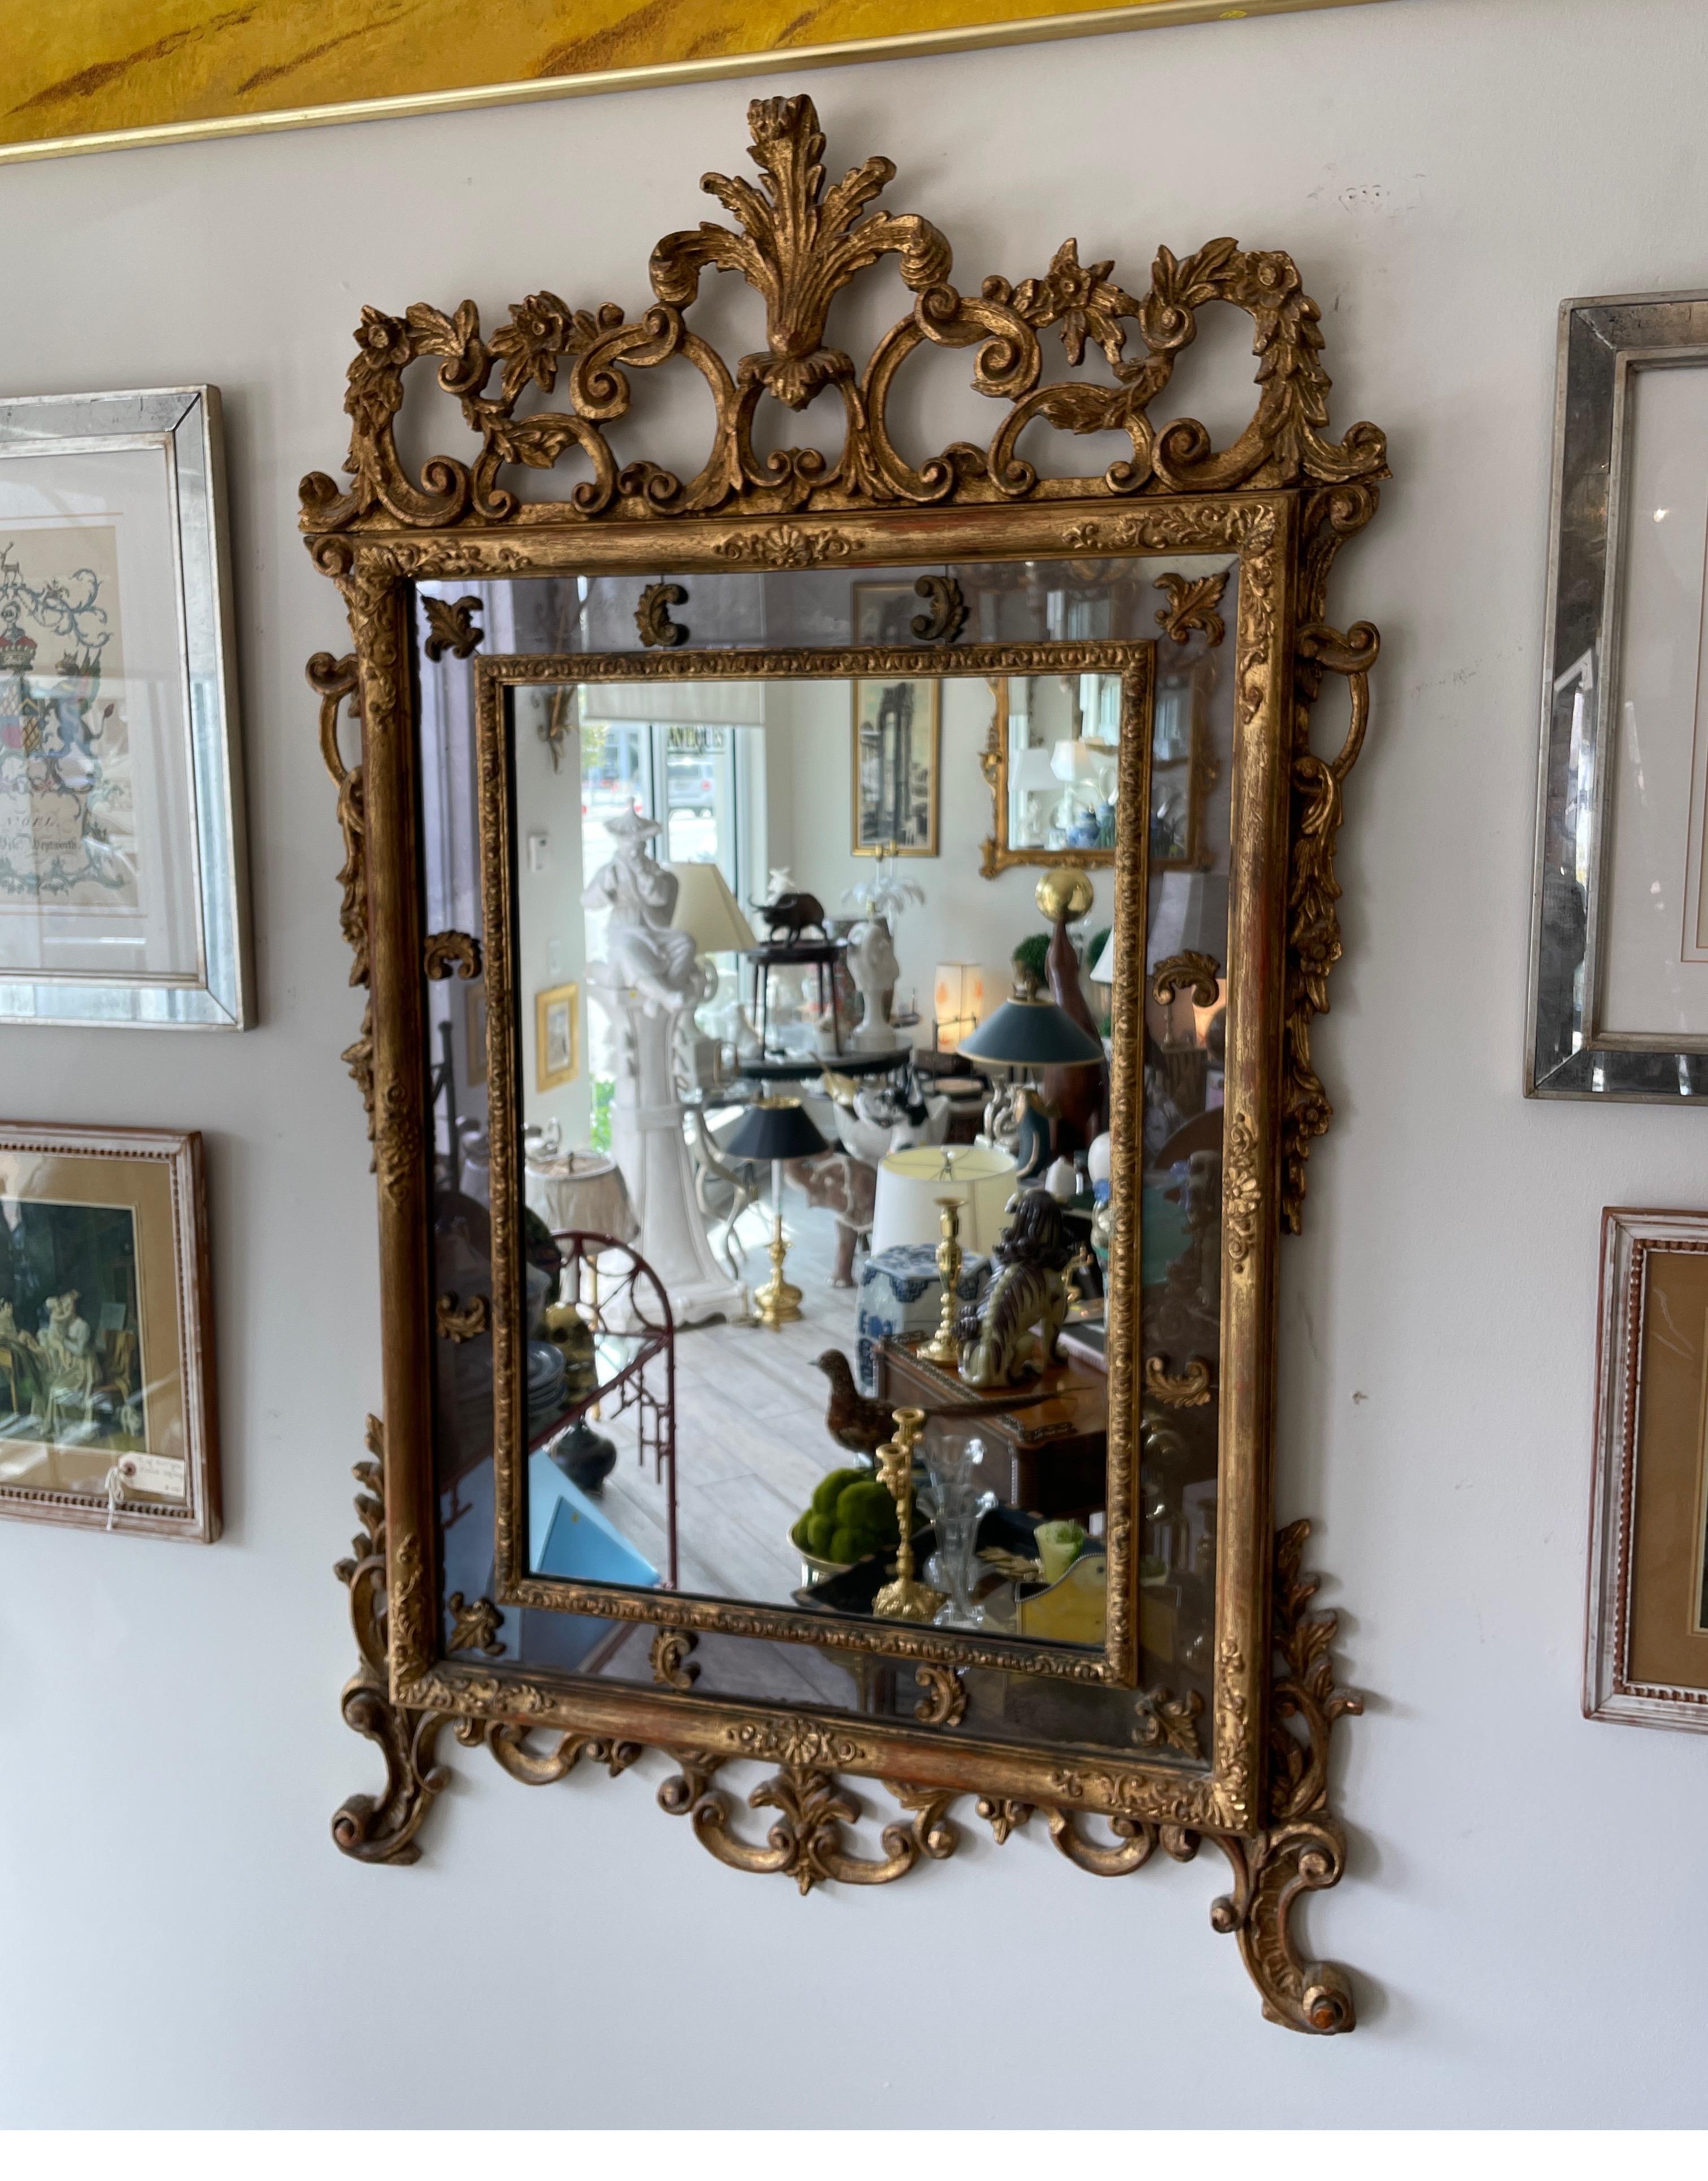 Außergewöhnlicher geschnitzter und vergoldeter italienischer Spiegel. Klare Spiegelplatte in der Mitte, umgeben von einem geräucherten Spiegel, der mit geschnitzten Fleur de Lys-Stücken verziert ist. Die gesamte Außenseite des Spiegels ist mit